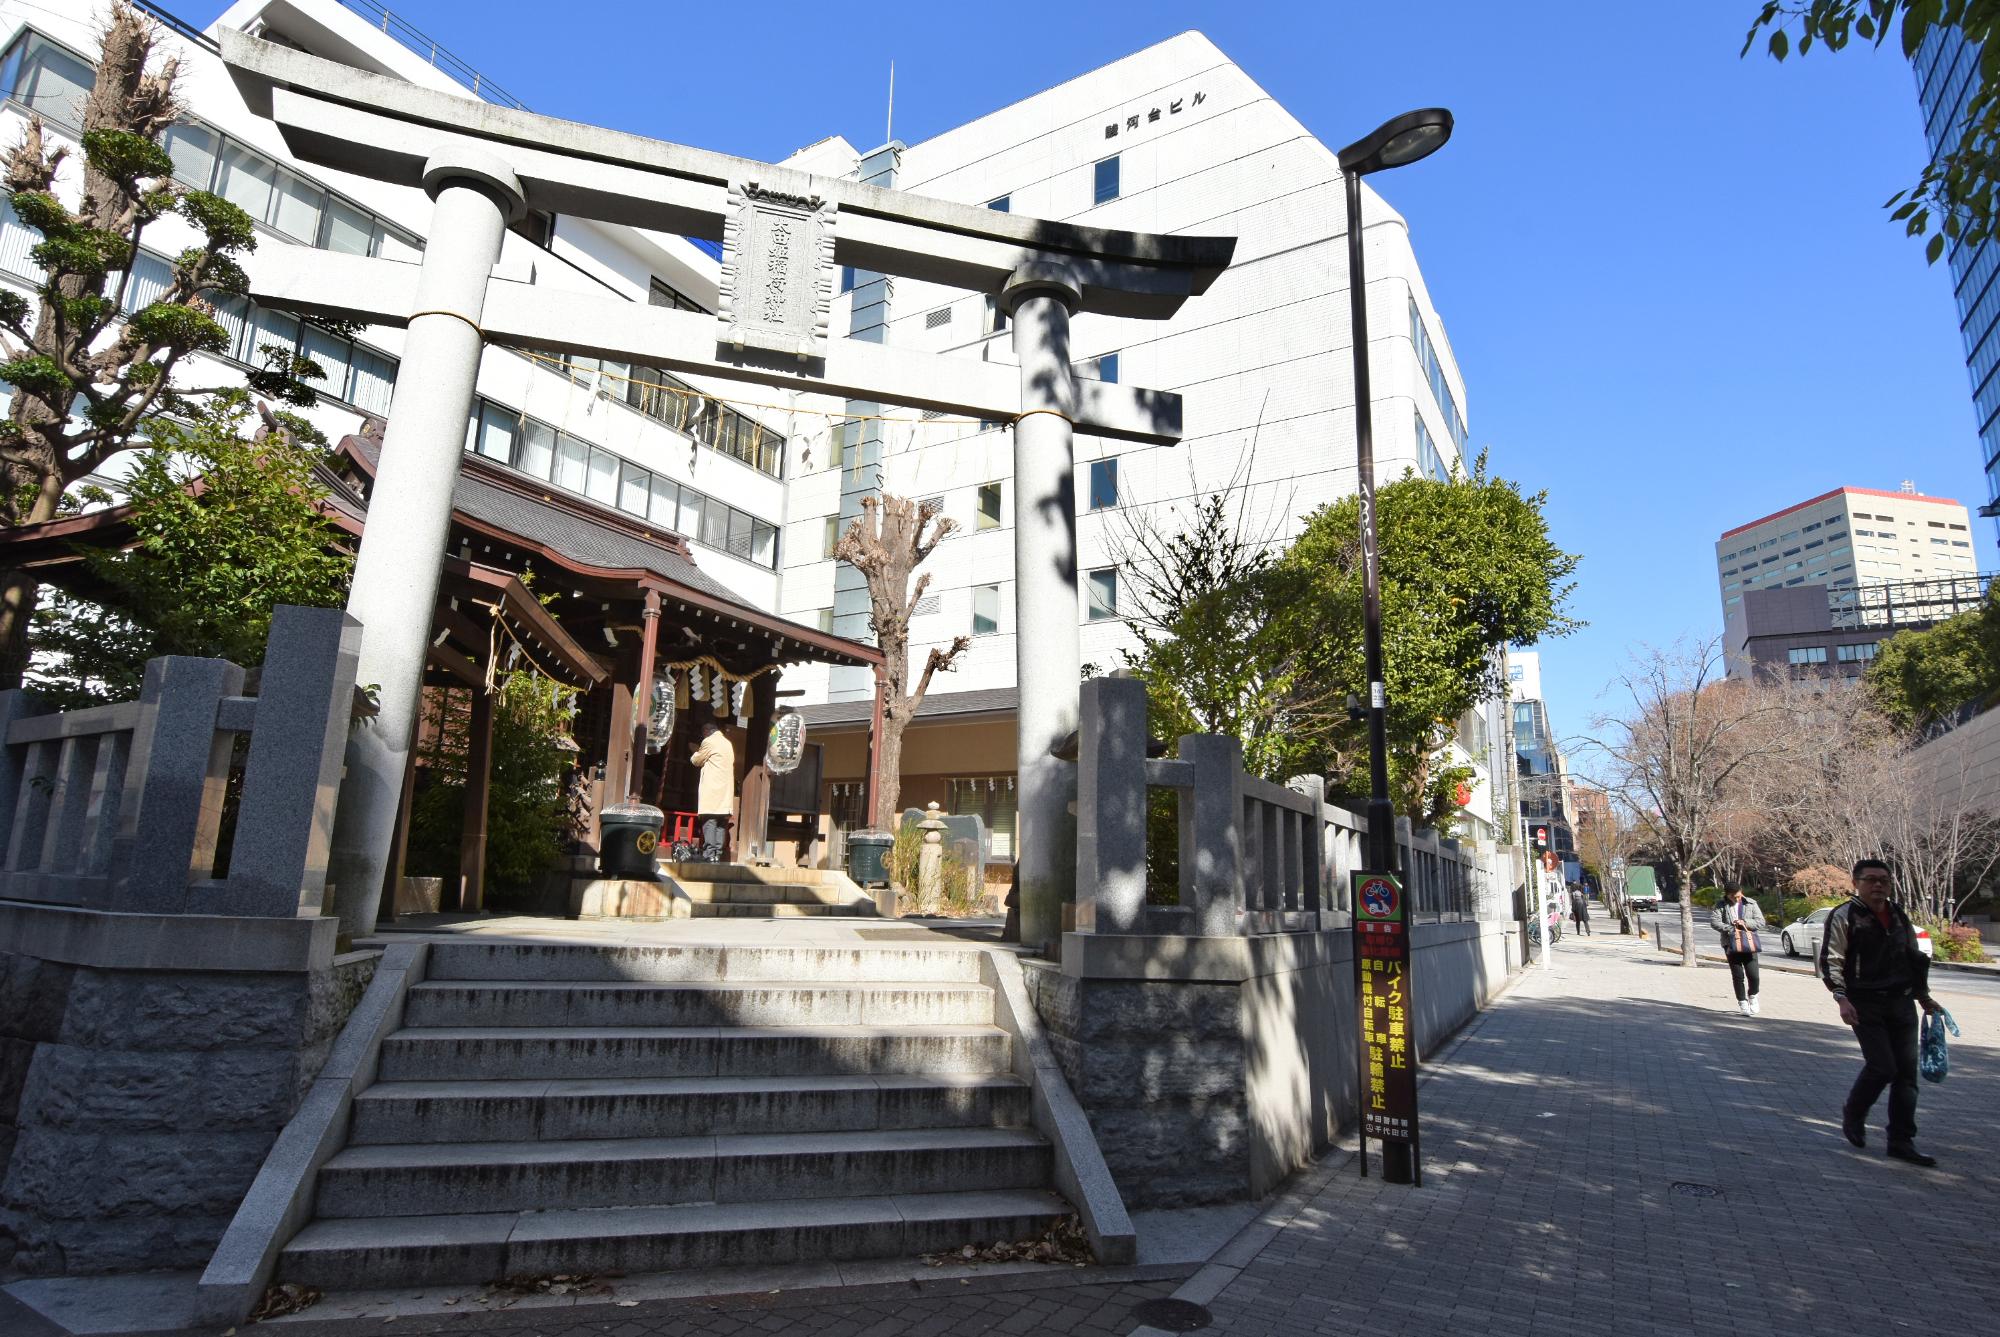 道路脇に鳥居に続く階段があり、鳥居の奥に拝殿が見える太田姫稲荷神社の写真